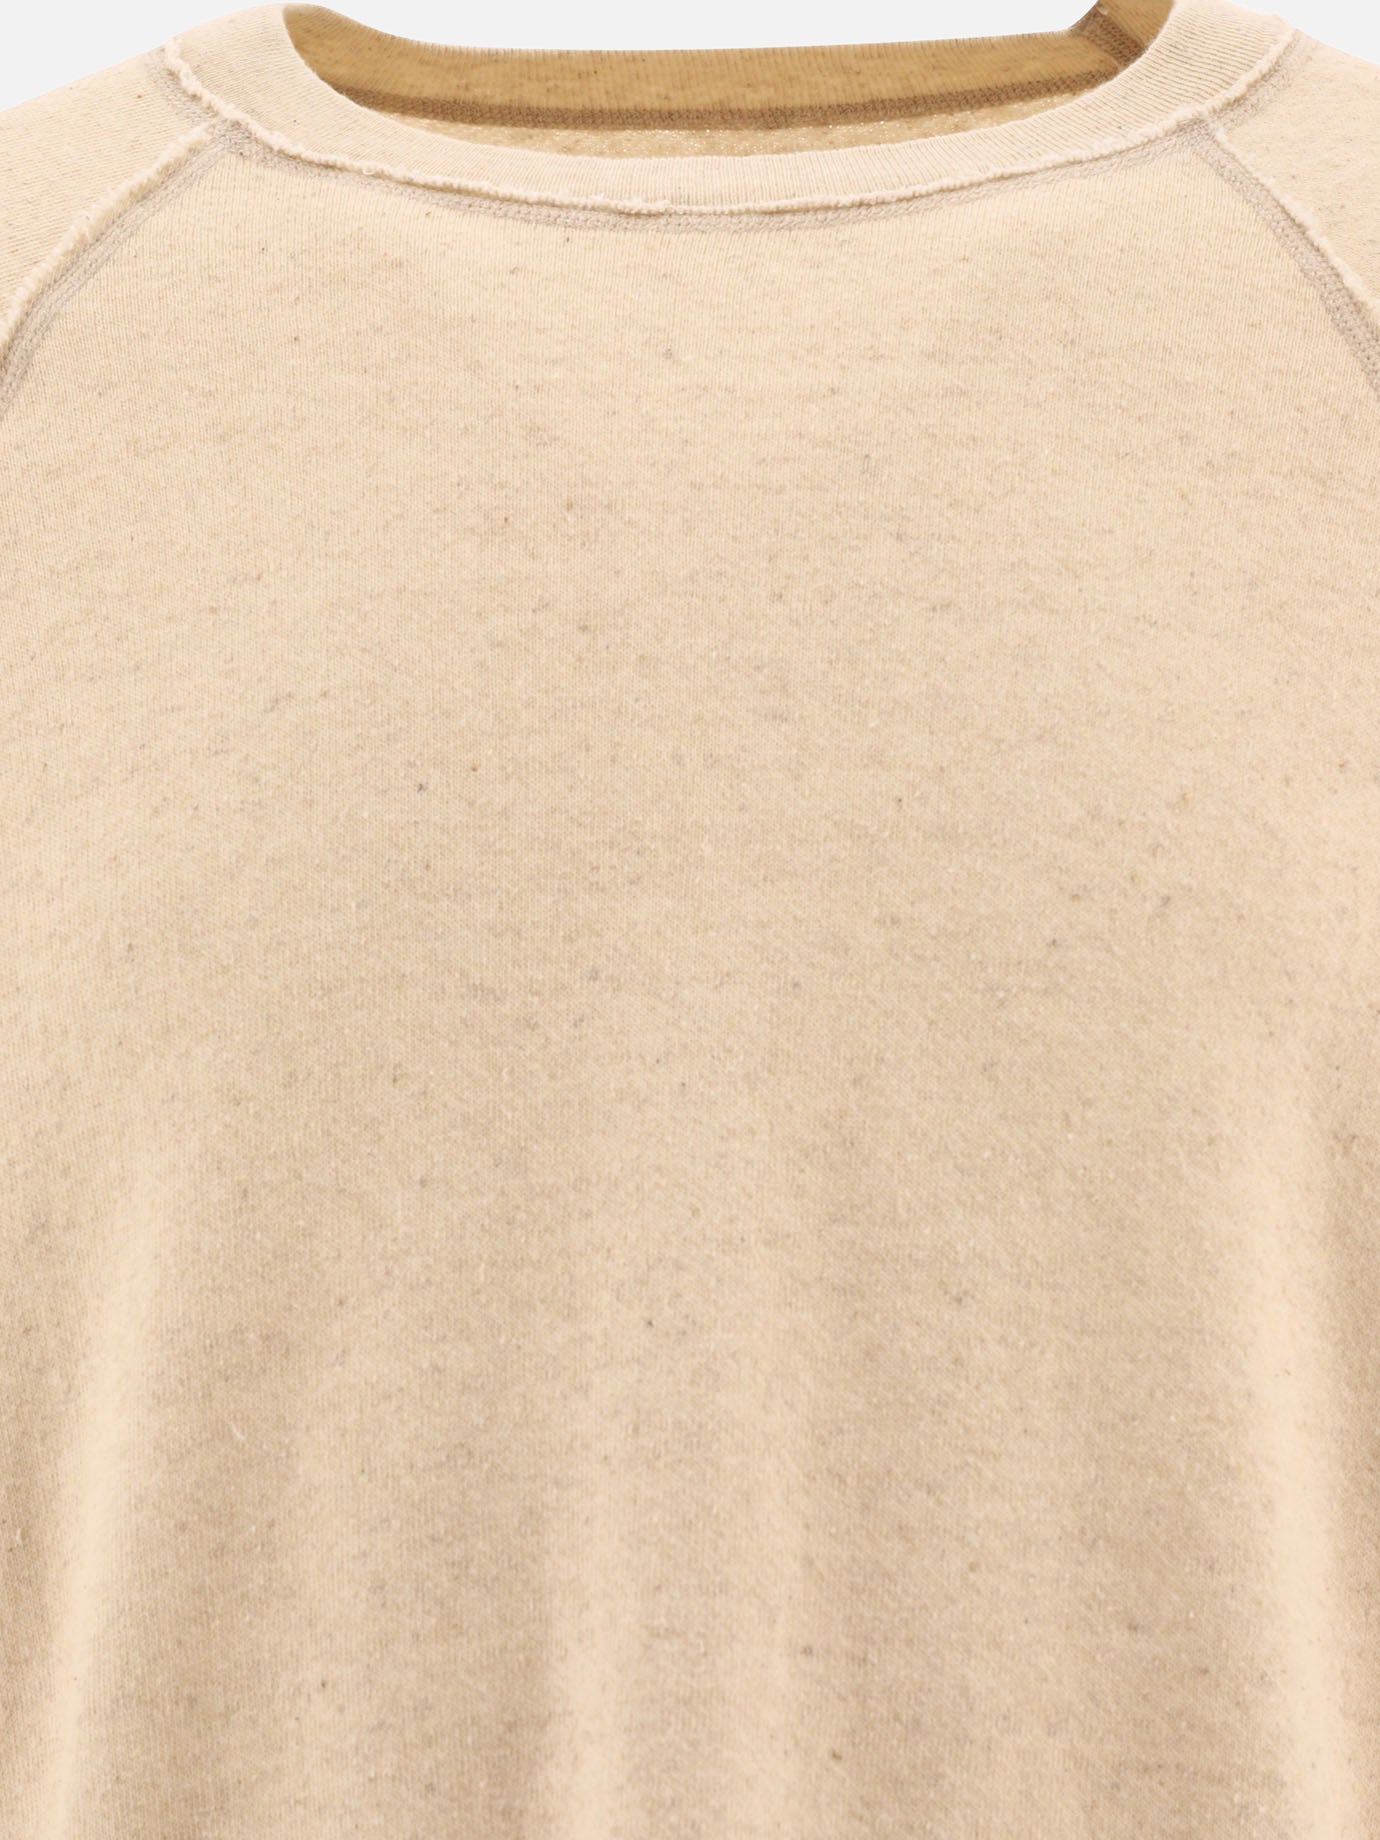 "Linen Gauze" sweatshirt